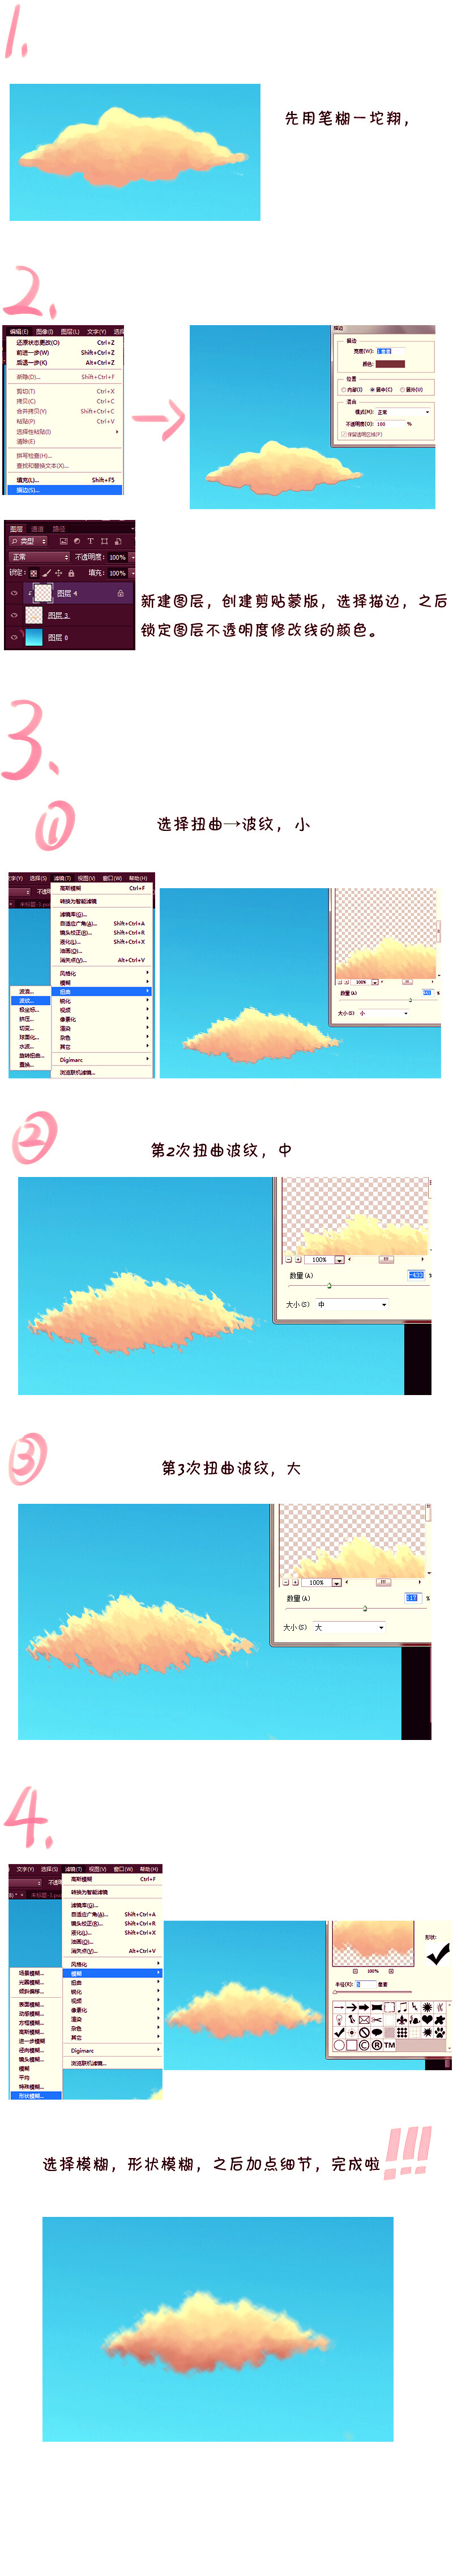 雲メイキング II 中国語注意，，，，，给不会画云的人的一点小技巧，，抱歉本来想弄个日语的，找不到人帮忙，还是算了吧 p站 二次元 教程 绘画